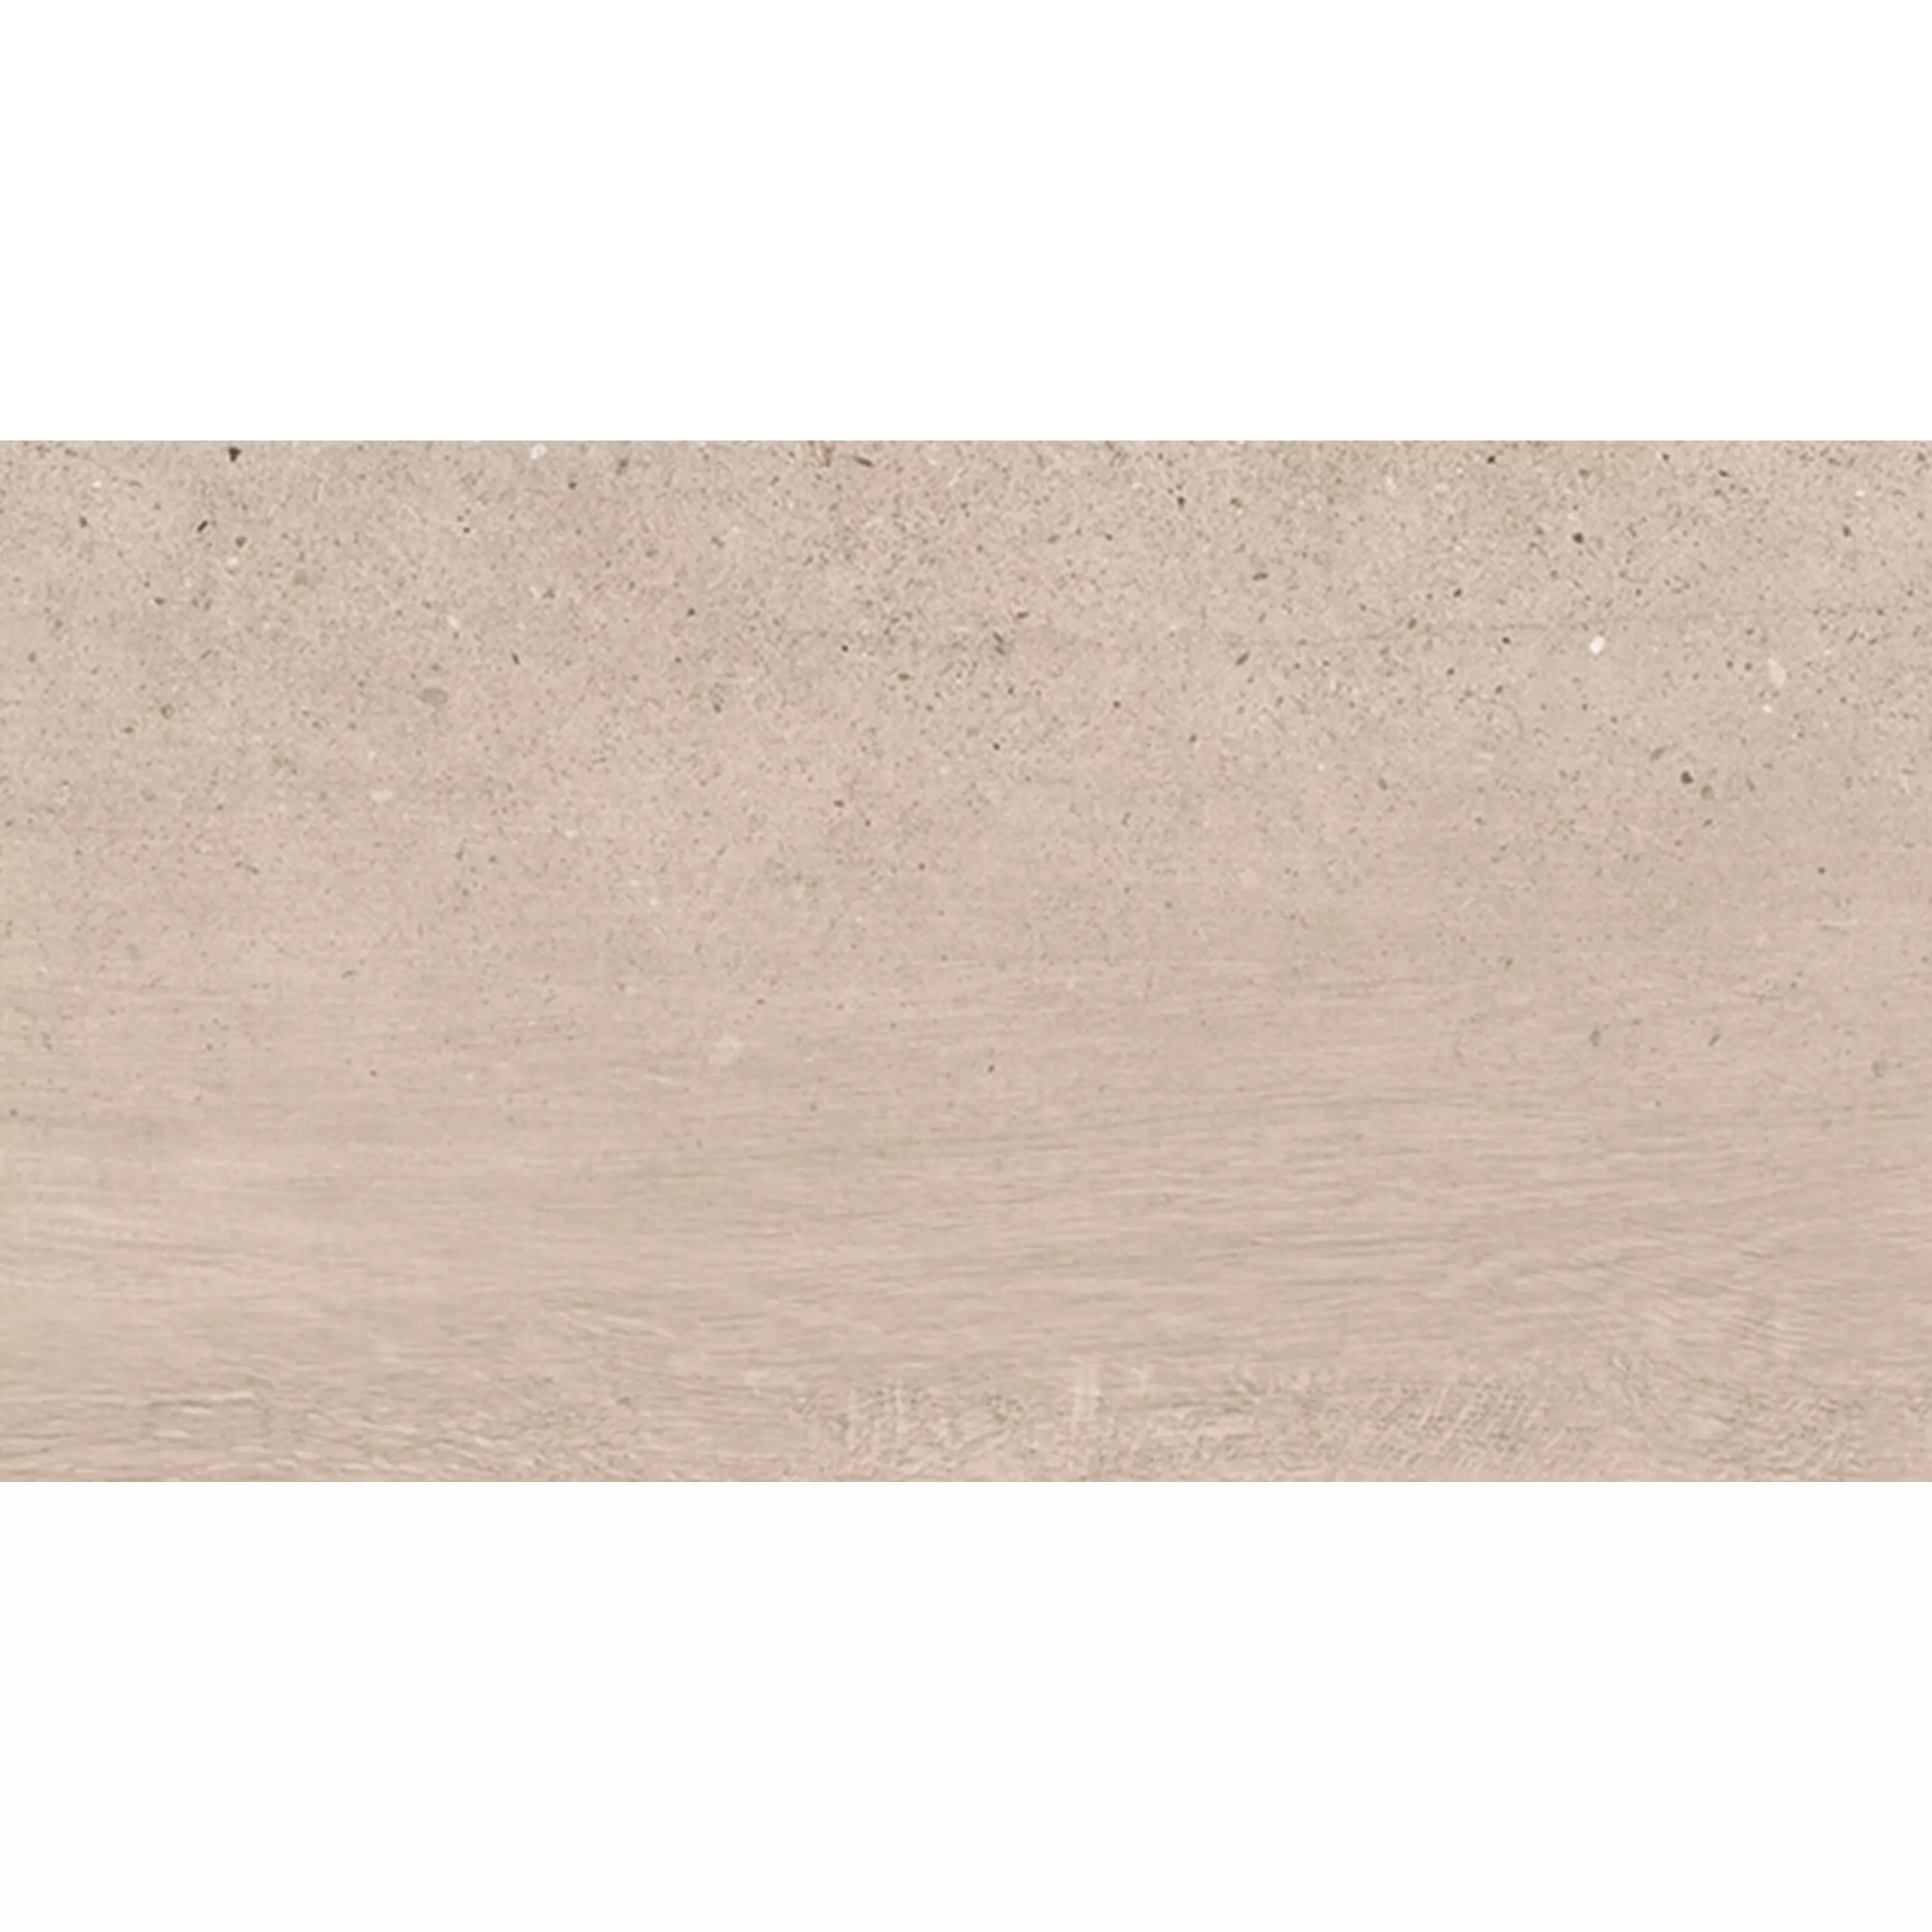 Floor Tiles Darazo Wood Optic 30x60cm Beige